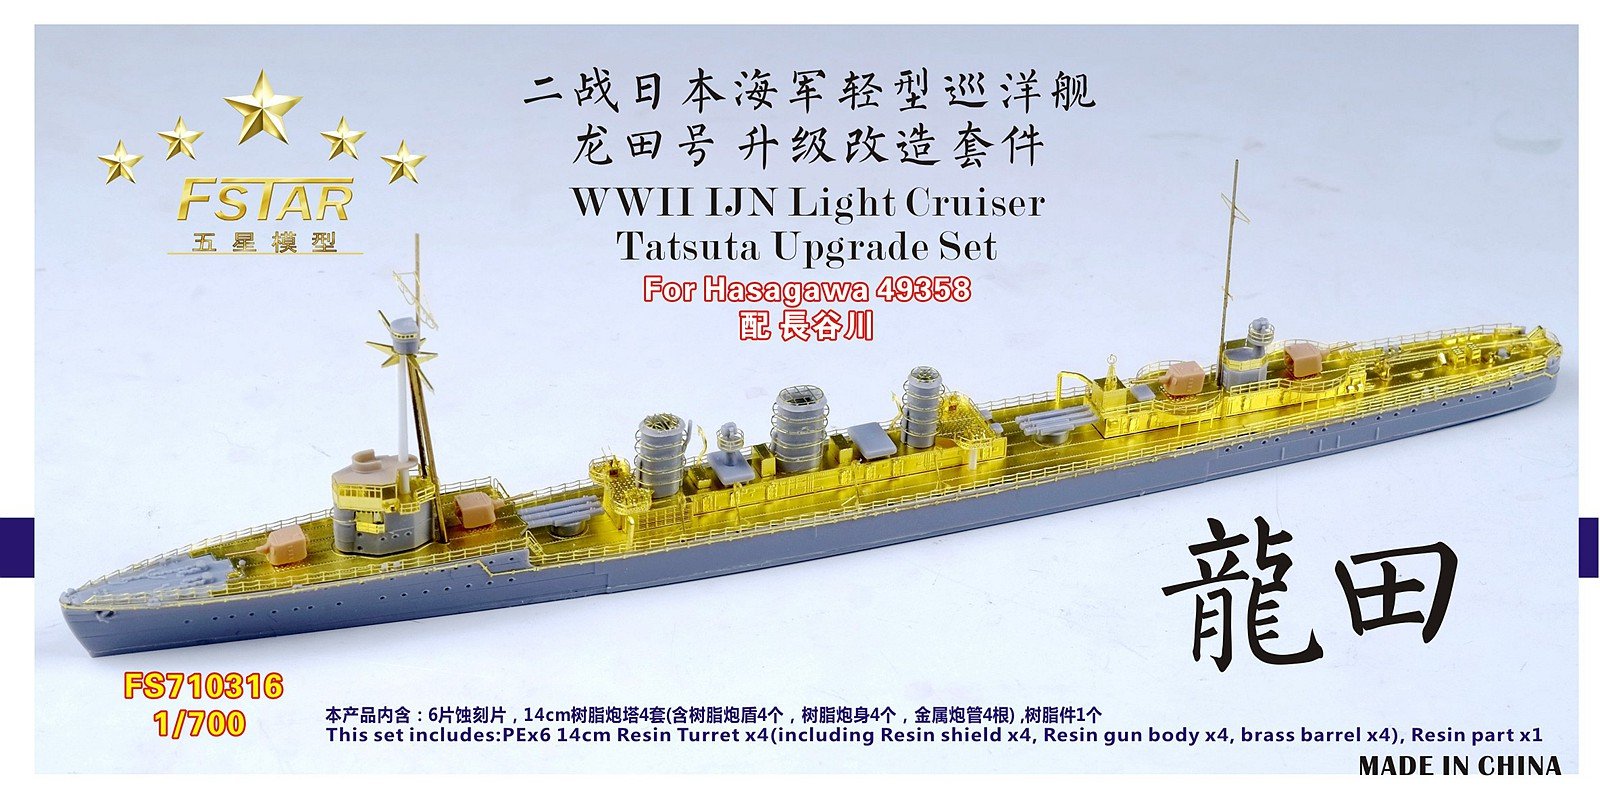 1/700 IJN Light Cruiser Tatsuta Upgrade Set for Hasagawa 49358 - Click Image to Close